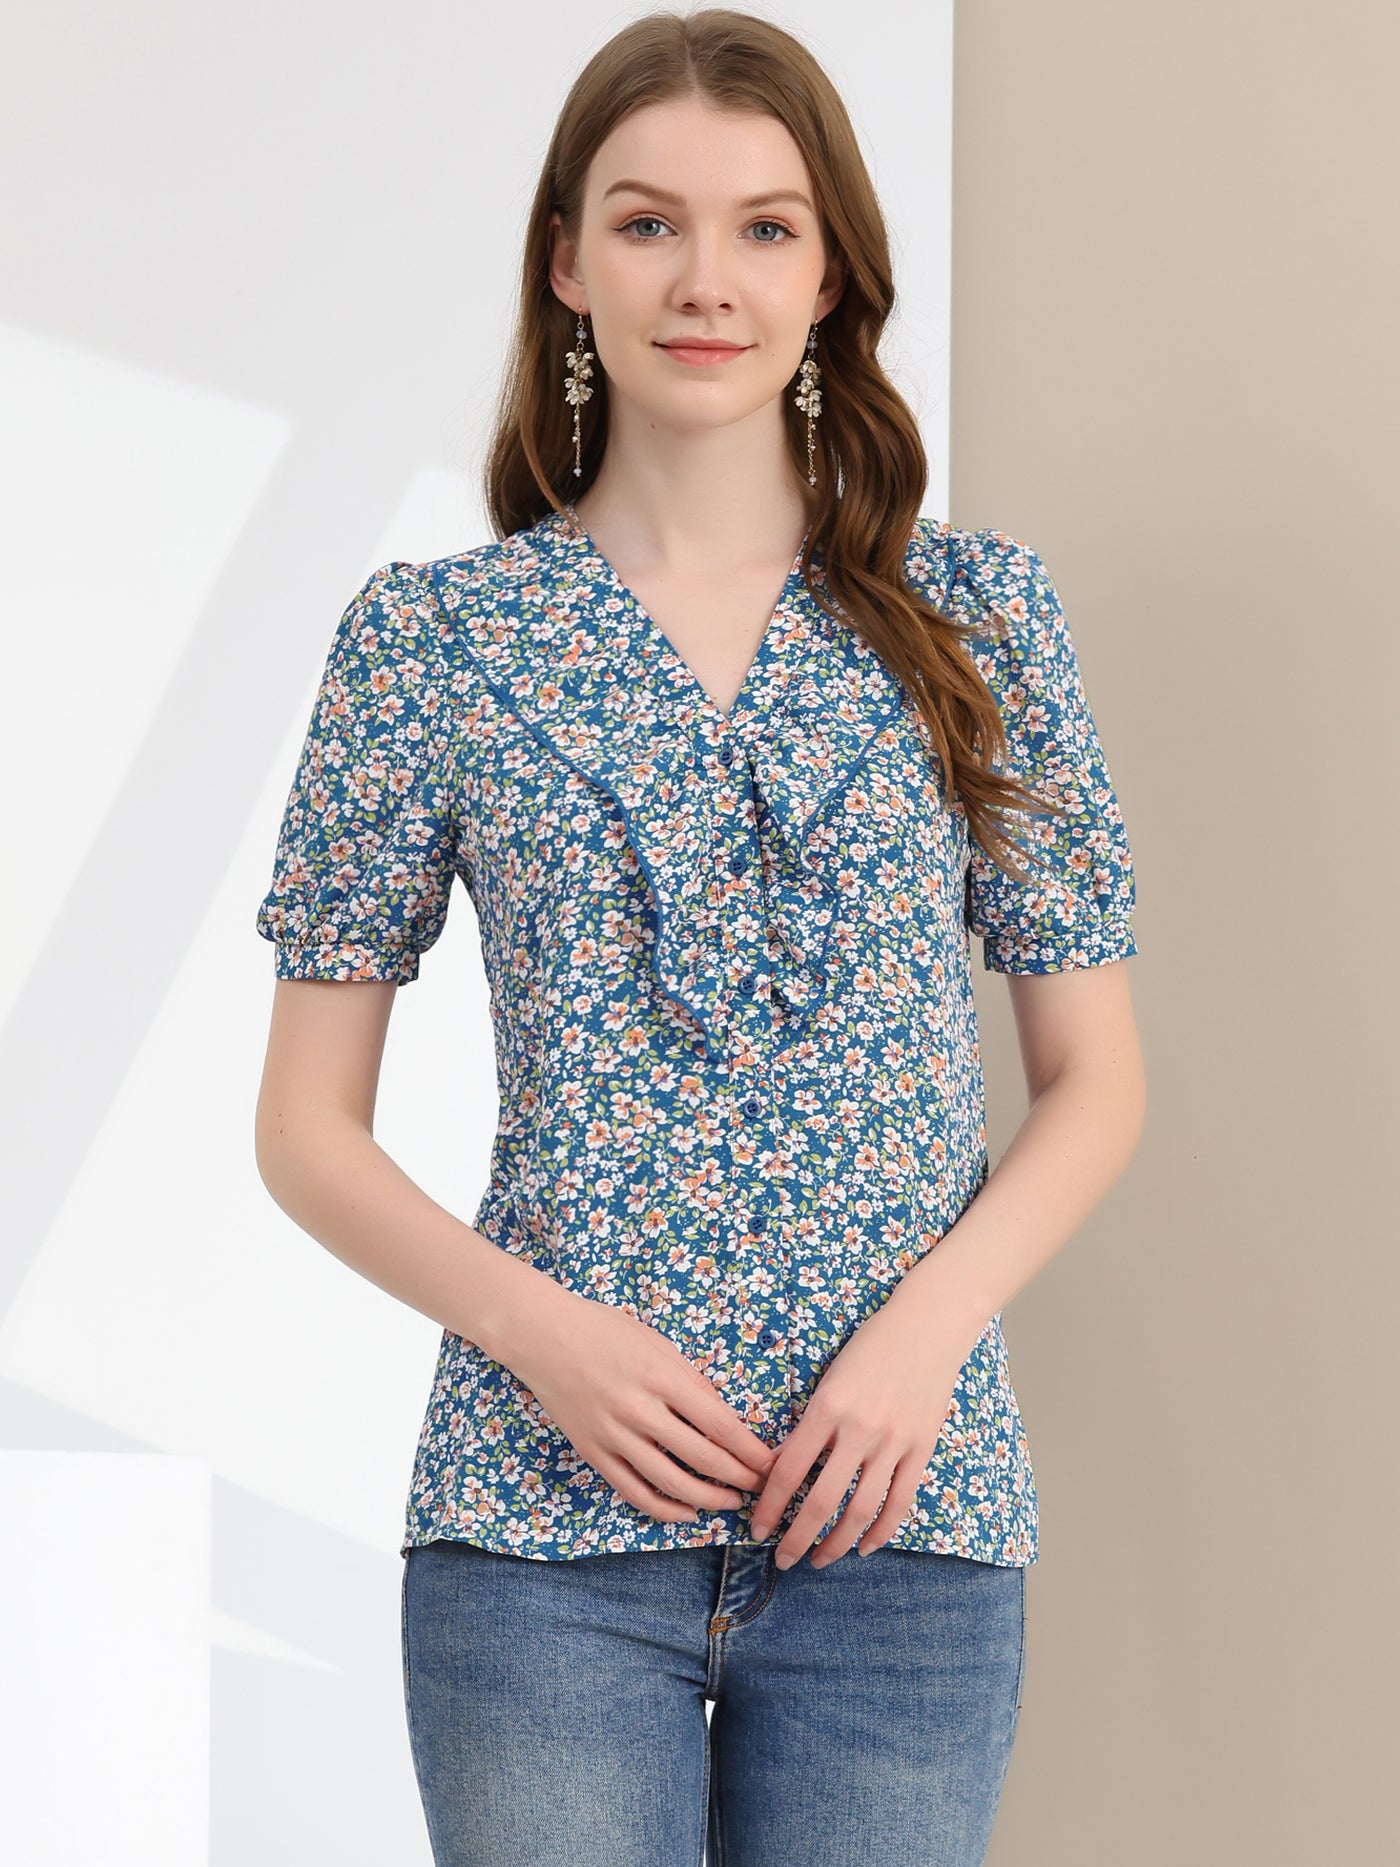 Allegra K Summer Short Sleeve V Neck Ruffle Floral Button Down Shirt Top